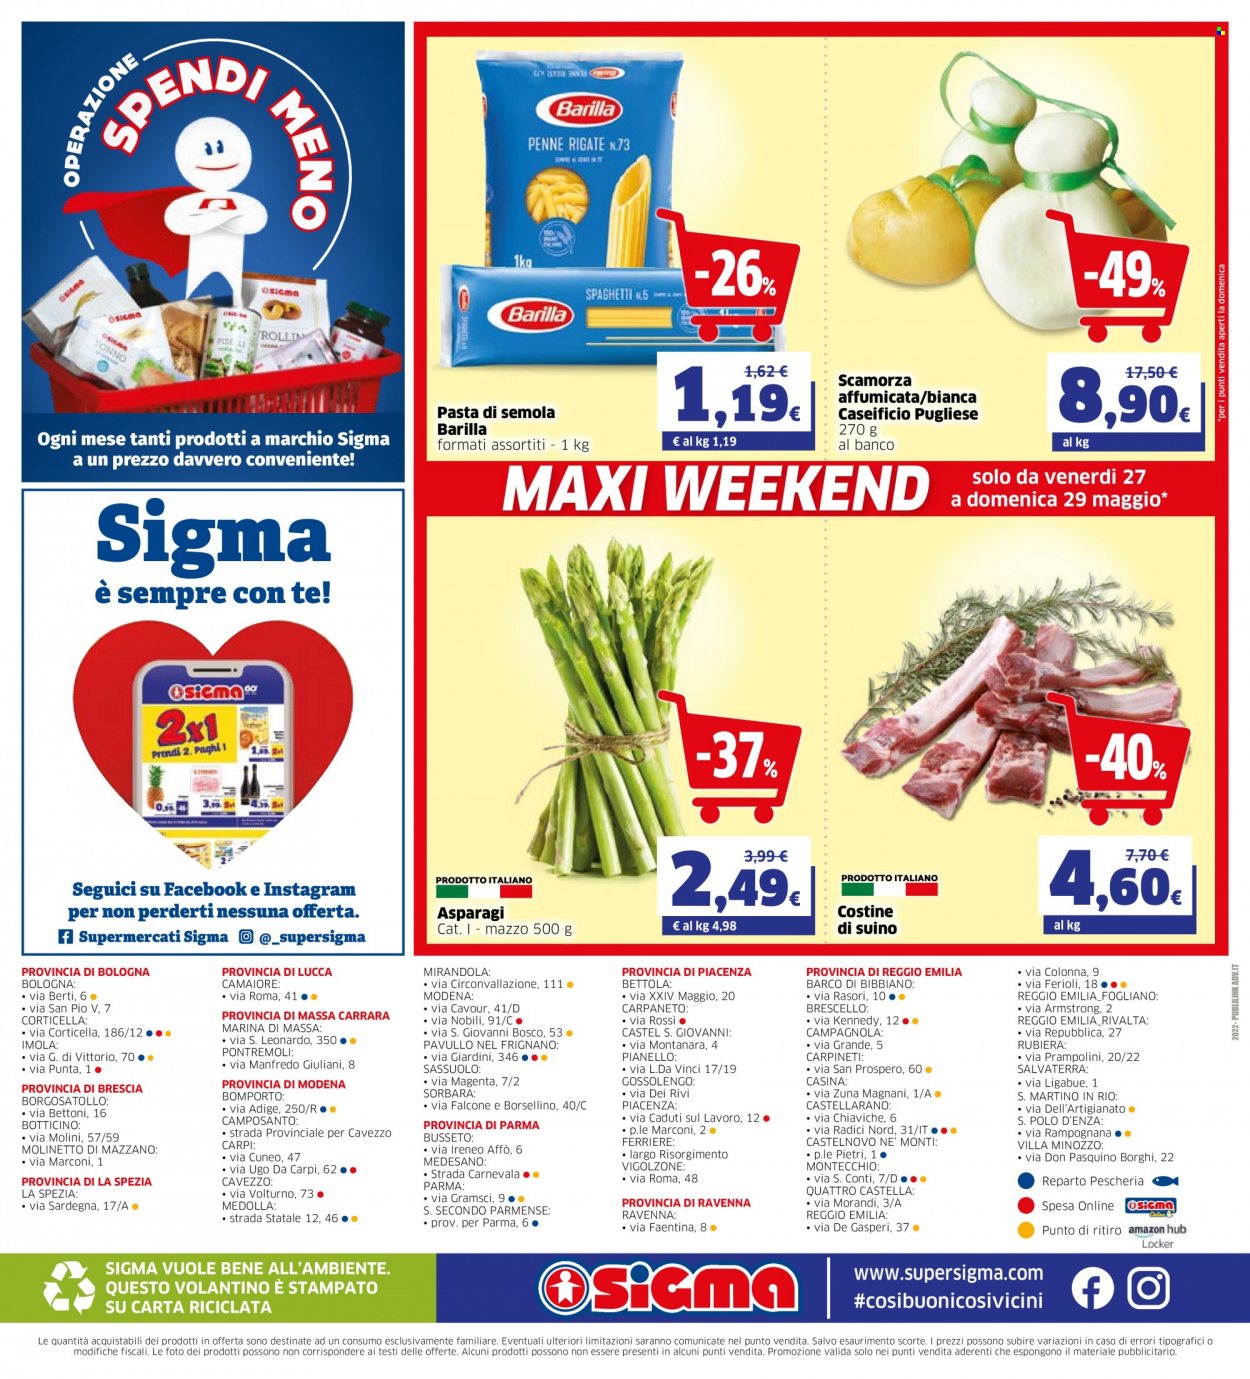 thumbnail - Volantino Sigma - 18/5/2022 - 31/5/2022 - Prodotti in offerta - asparagi, costine di suino, suino, formaggio, scamorza, Barilla, spaghetti, pasta, penne. Pagina 24.